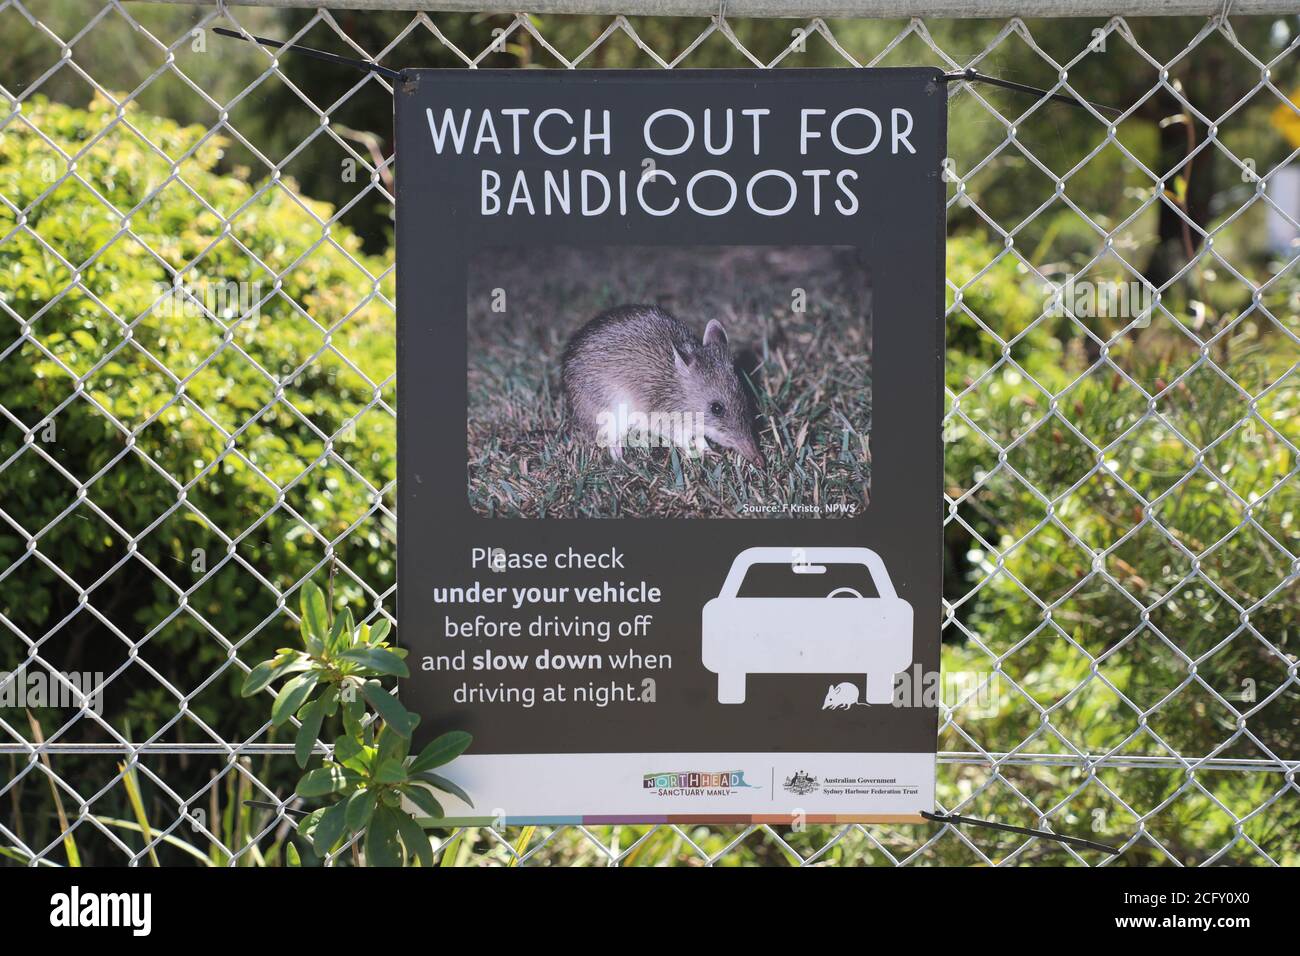 Ten cuidado con el cartel de bandicoots en North Head Sanctuary, Manly. Foto de stock